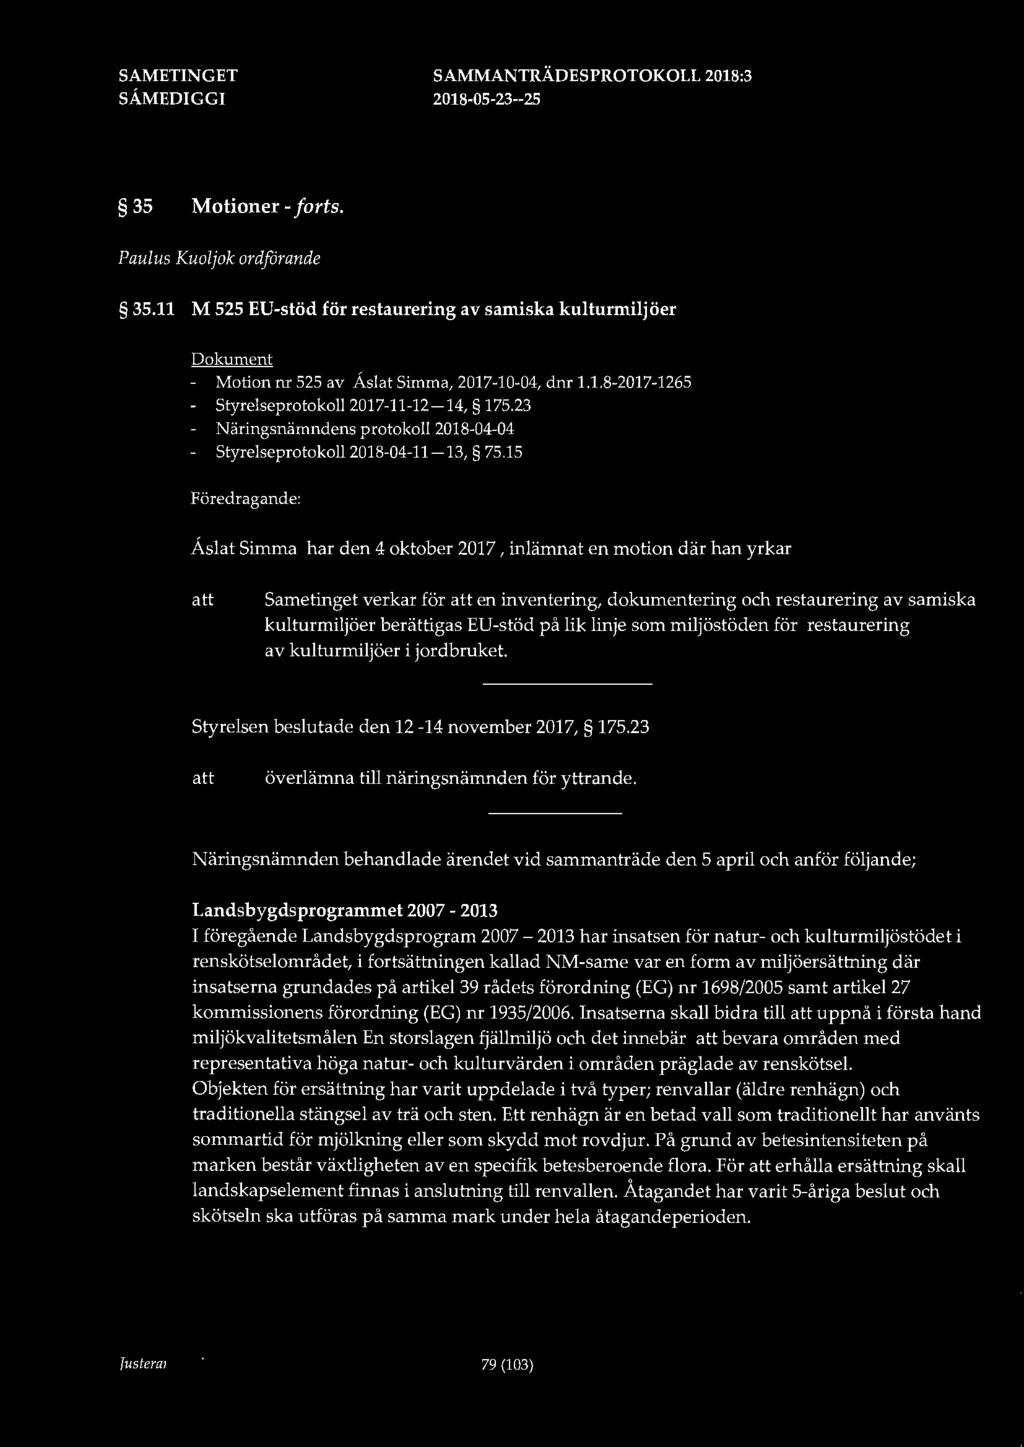 35 Motioner - forts. Paulus Kuoljok ordförande 35.11 M 525 EU-stöd för restaurering av samiska kulturmiljöer Dokument - Motion nr 525 av Åslat Simma, 2017-10-04, dnr 1.1.8-2017-1265 - Styrelseprotokoll 2017-11-12-14, 175.